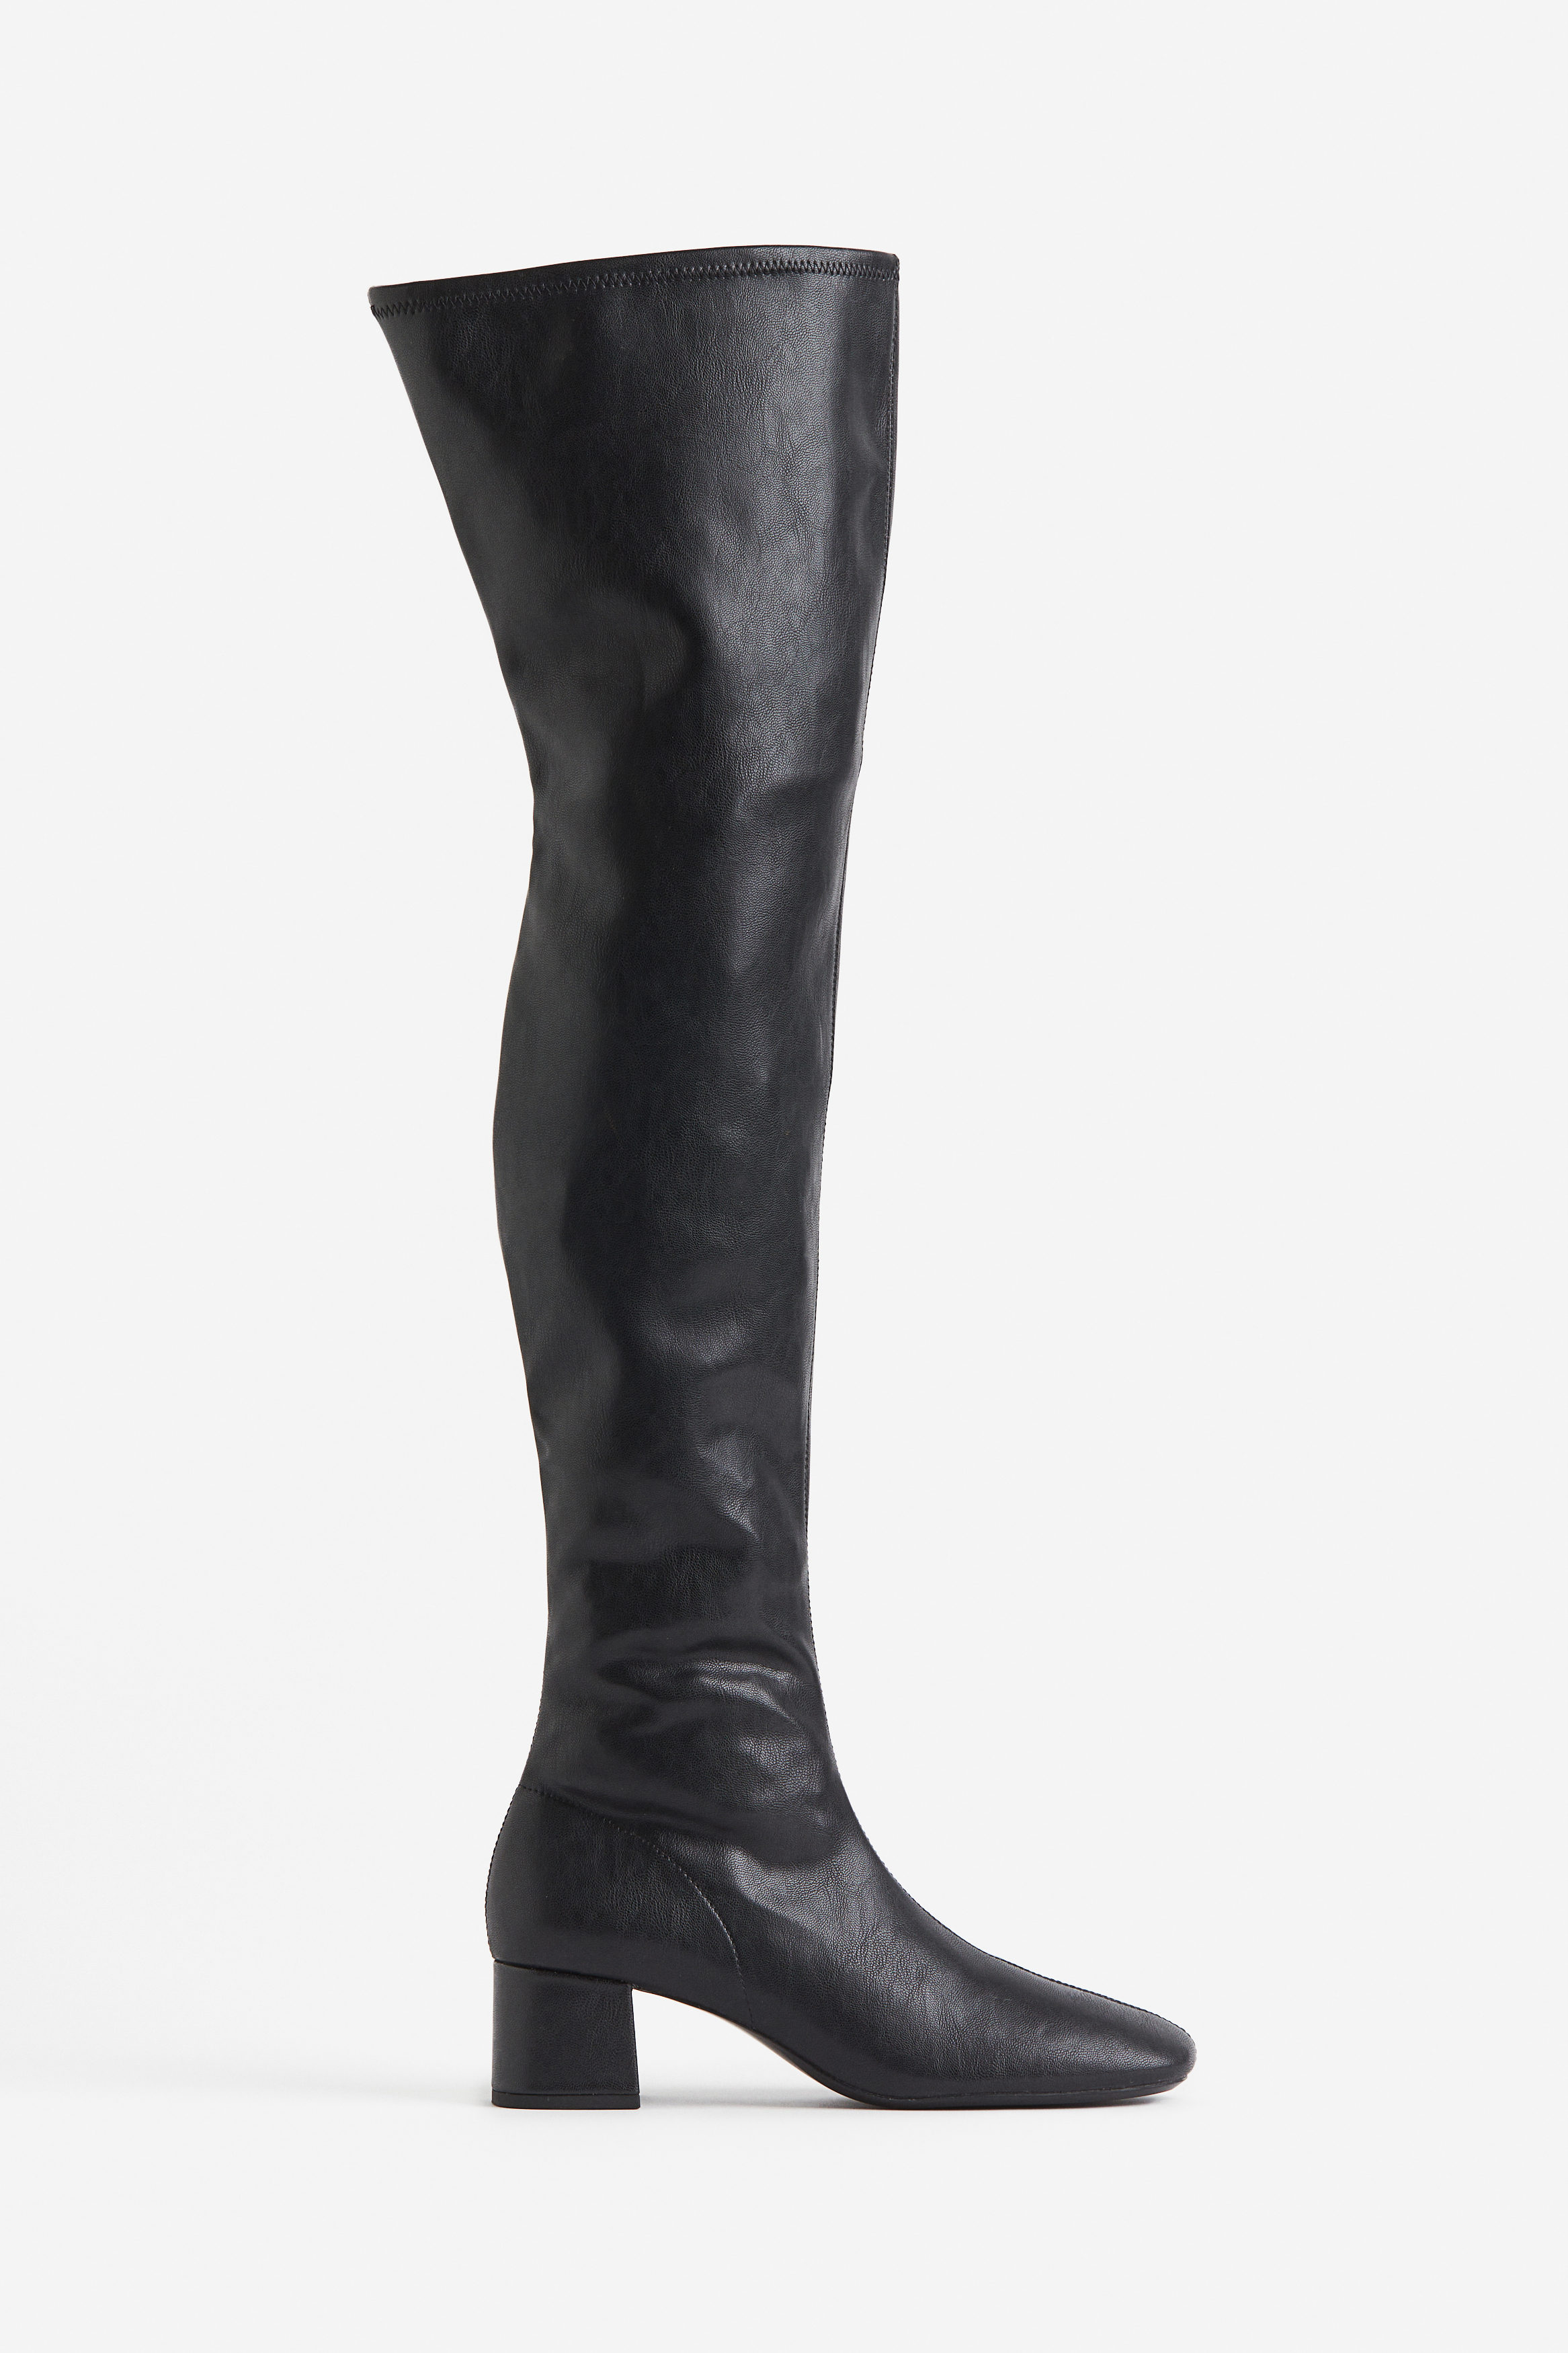 Billede af H&M Overknee-støvler Sort. Farve: Black I størrelse 35